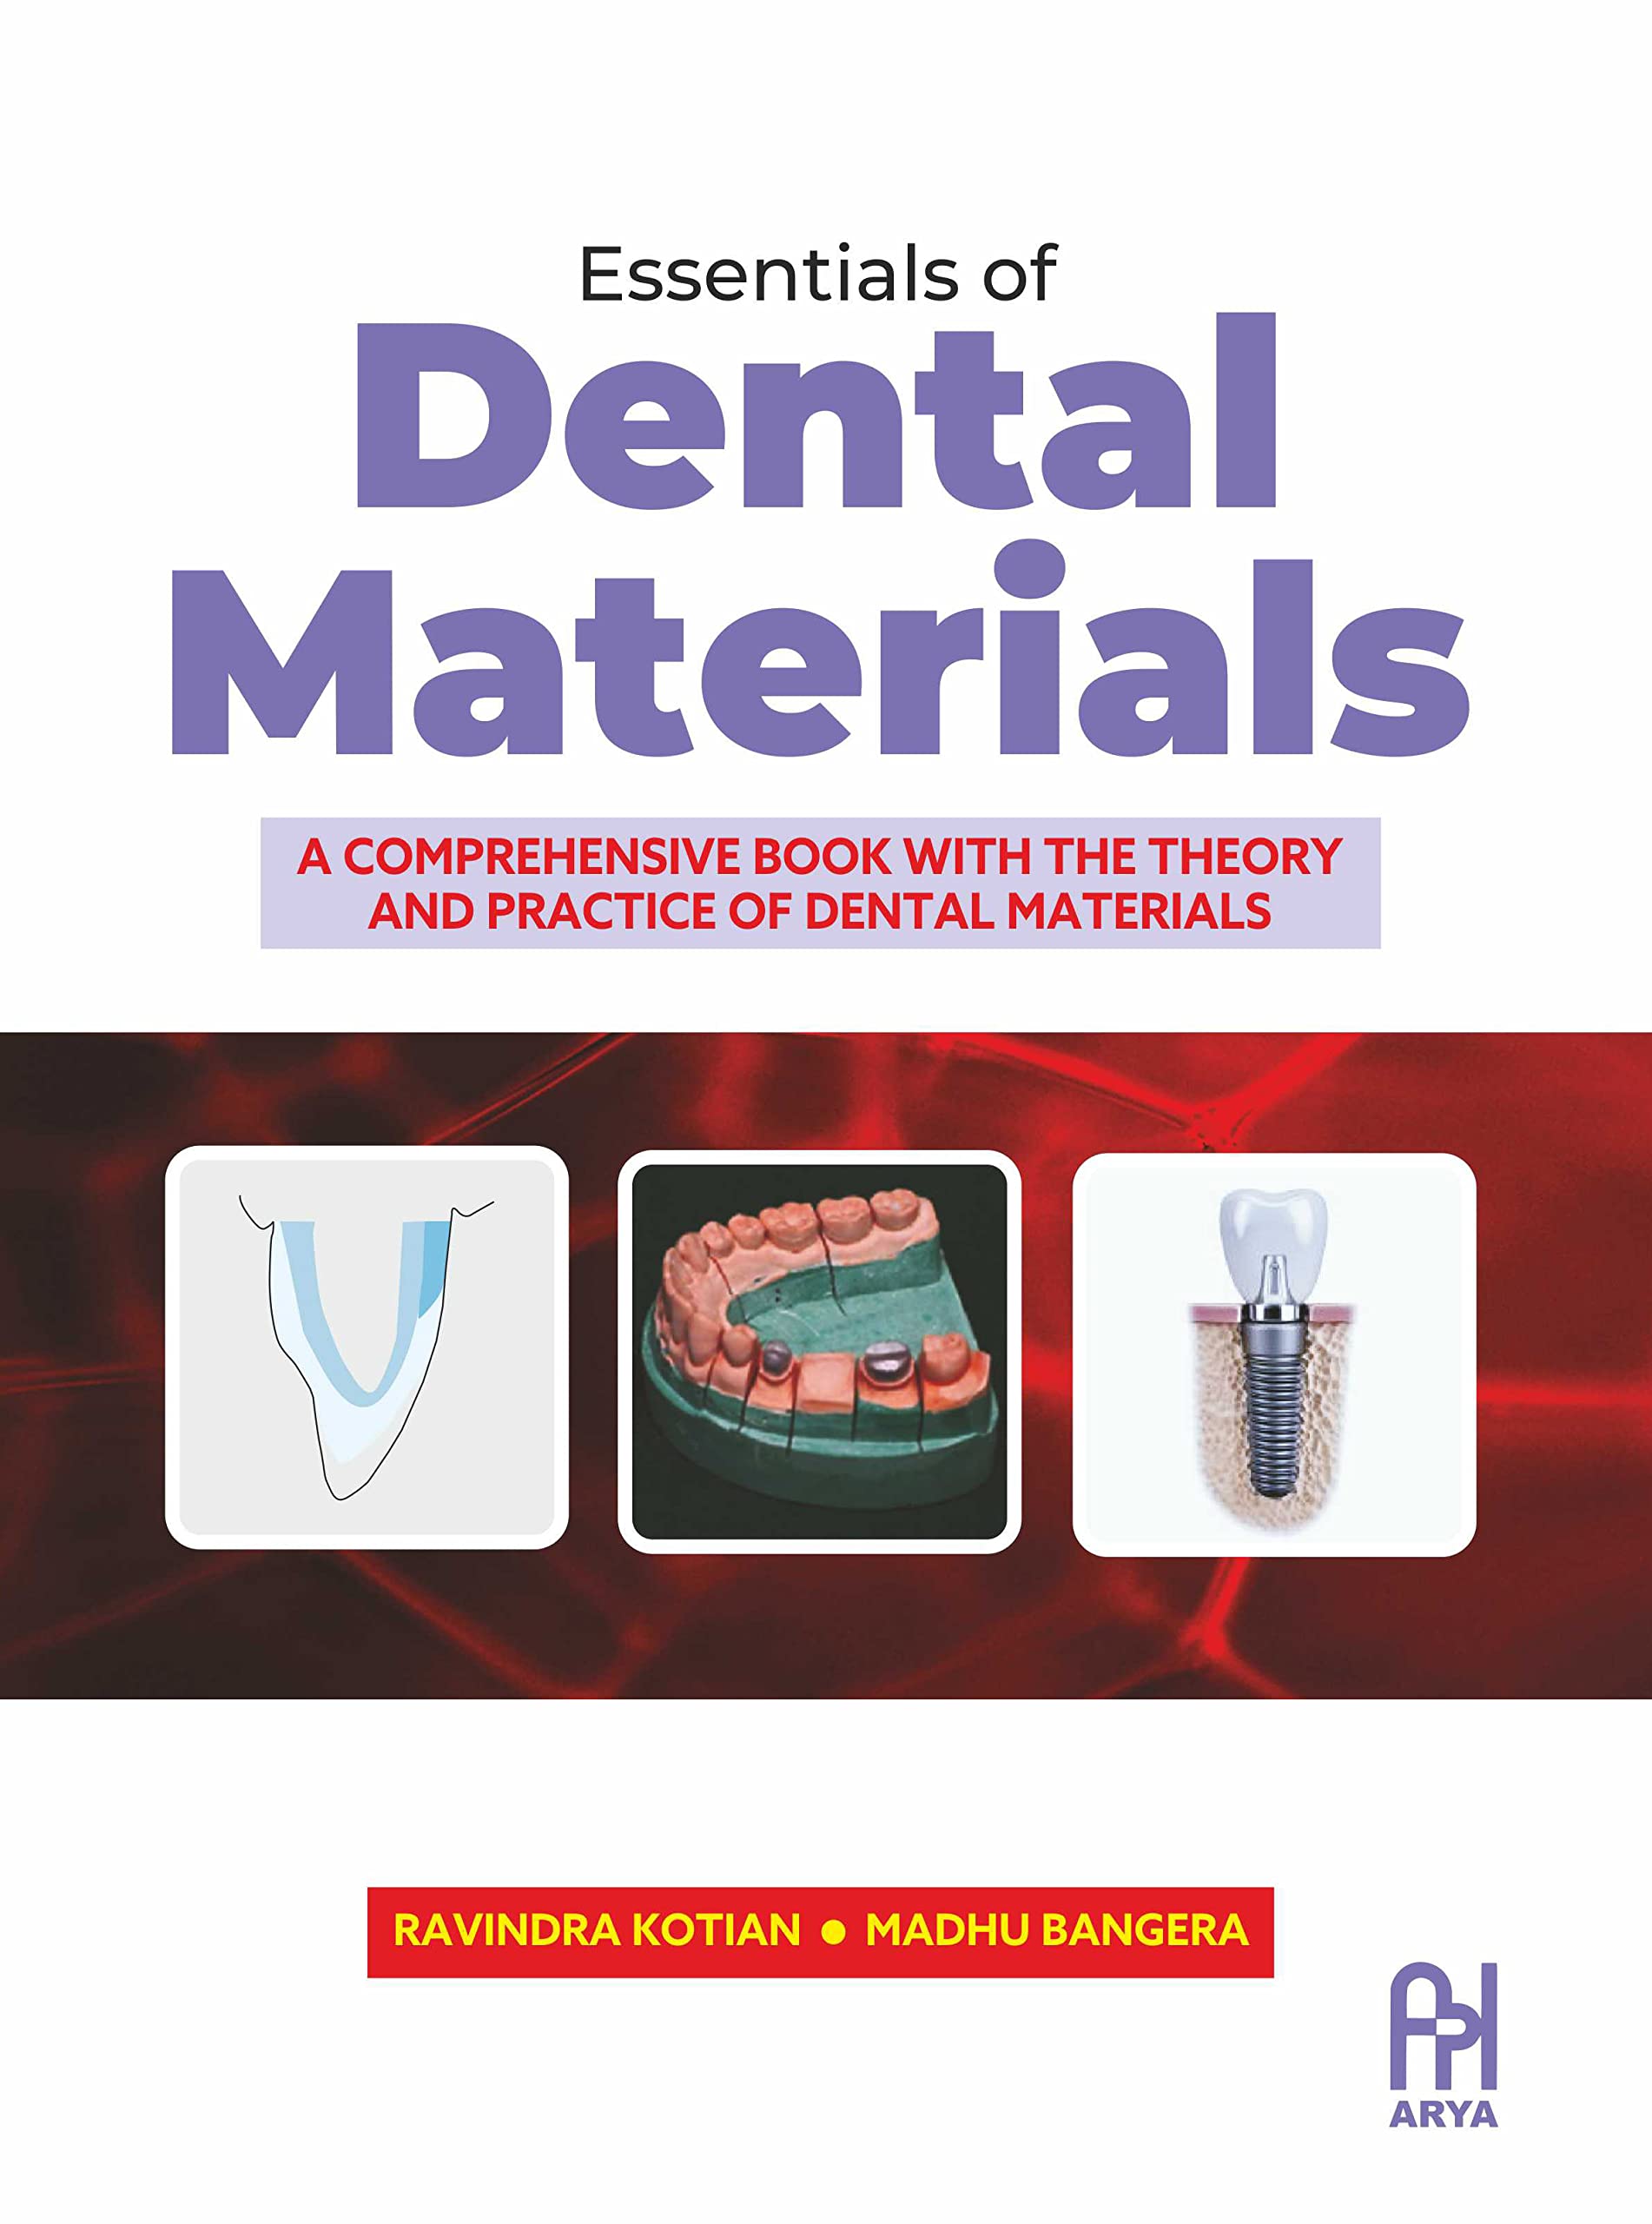 Essentials of Dental Materials